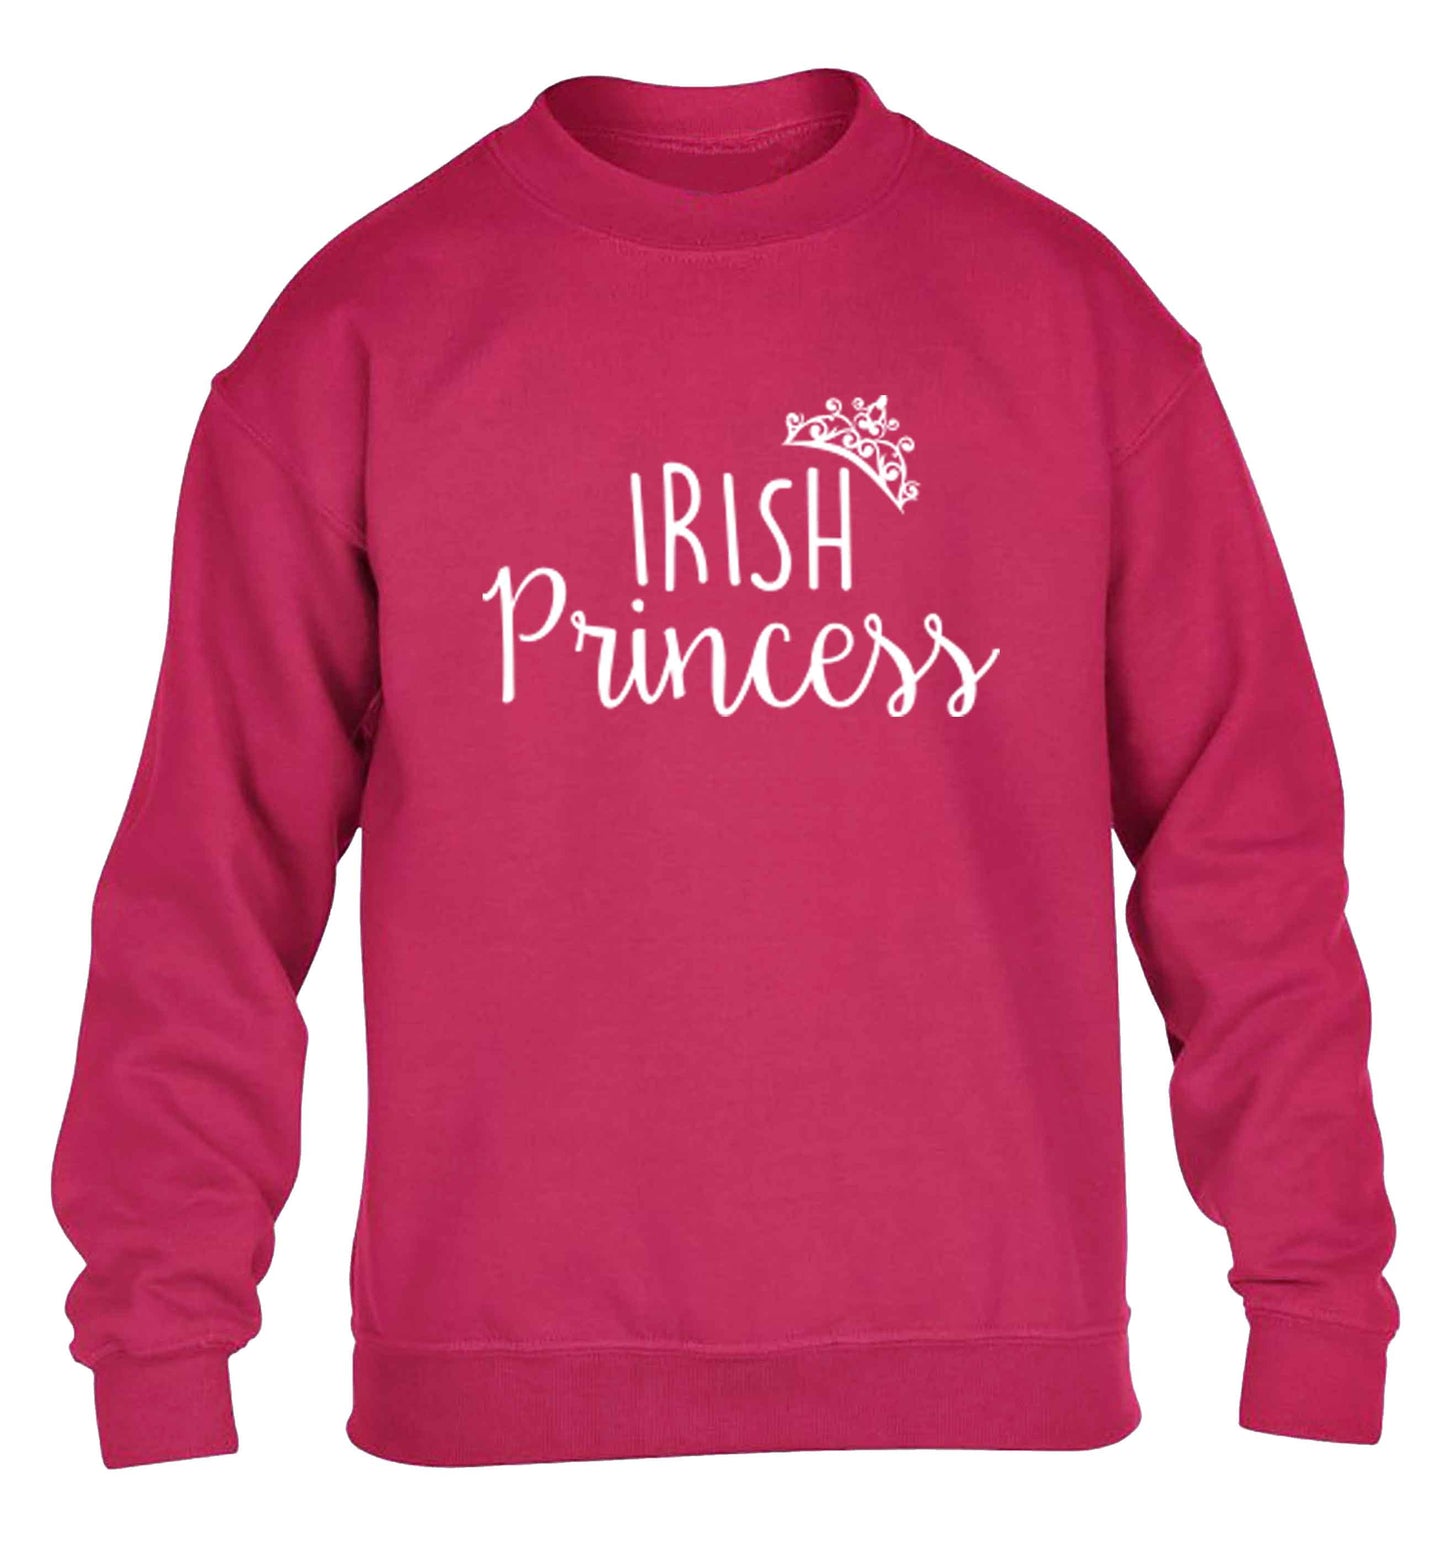 Irish princess children's pink sweater 12-13 Years